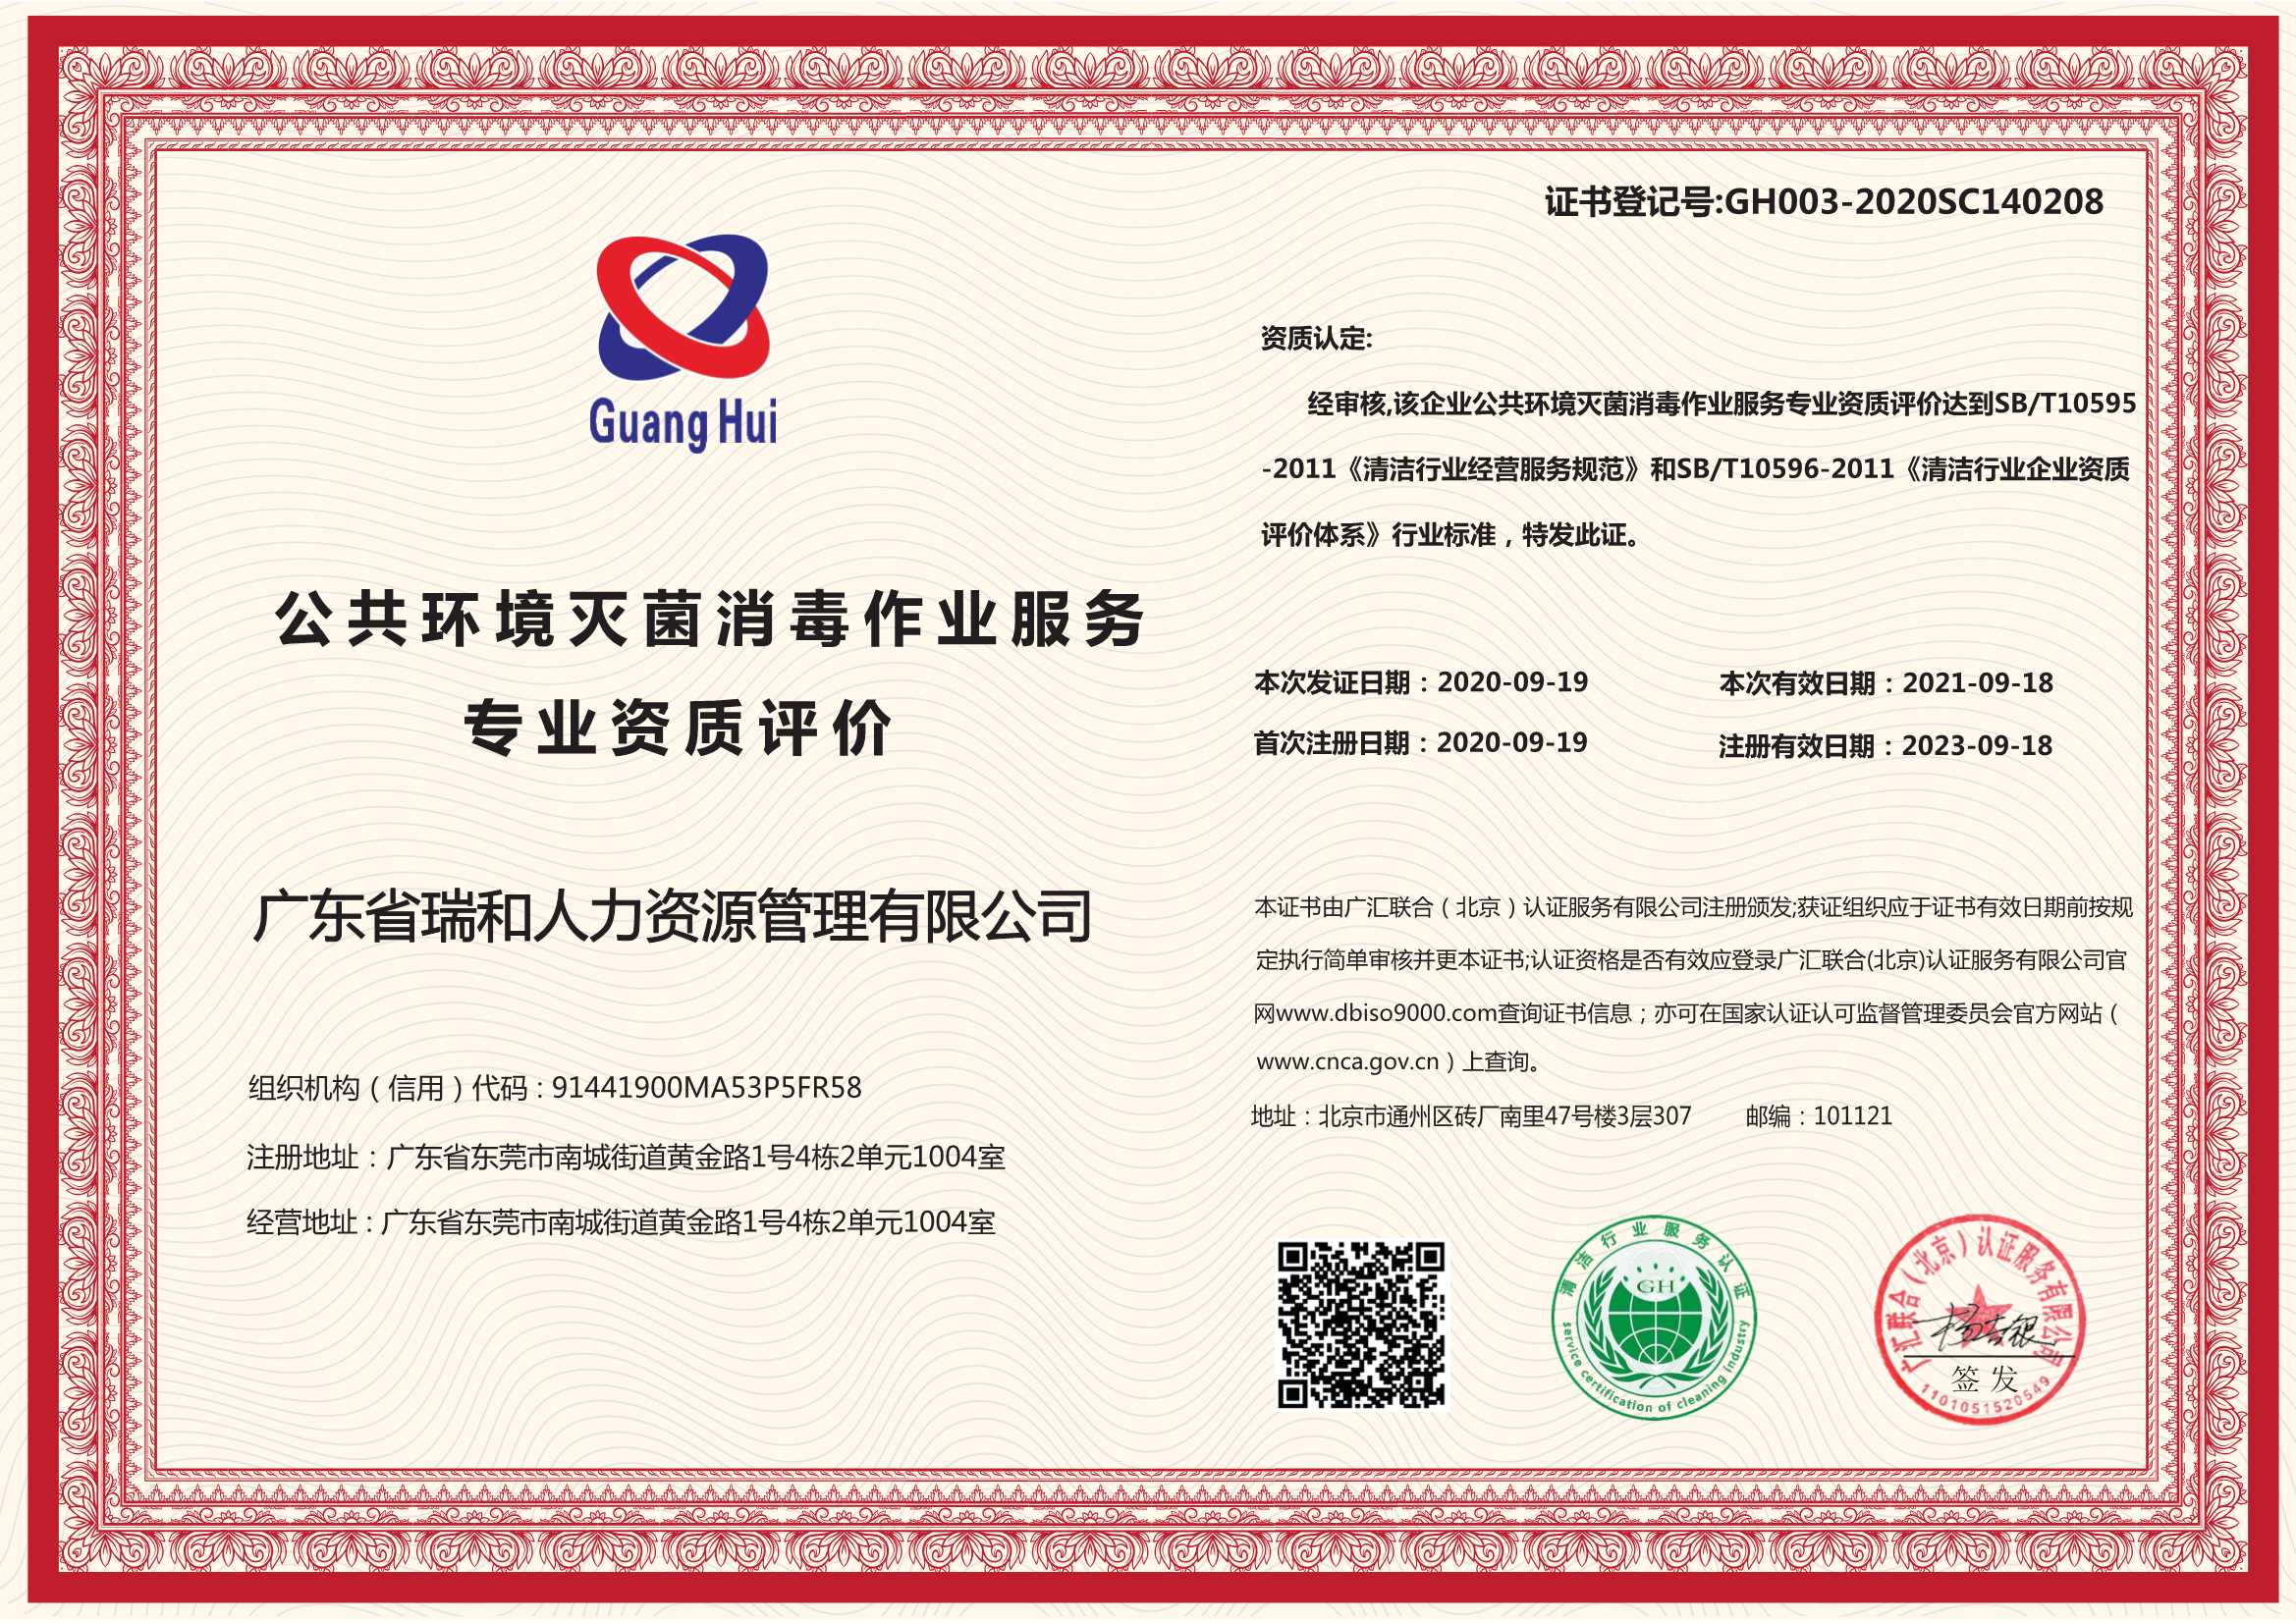 淮安ISO14001 制造绿色产品 扩大市场份额